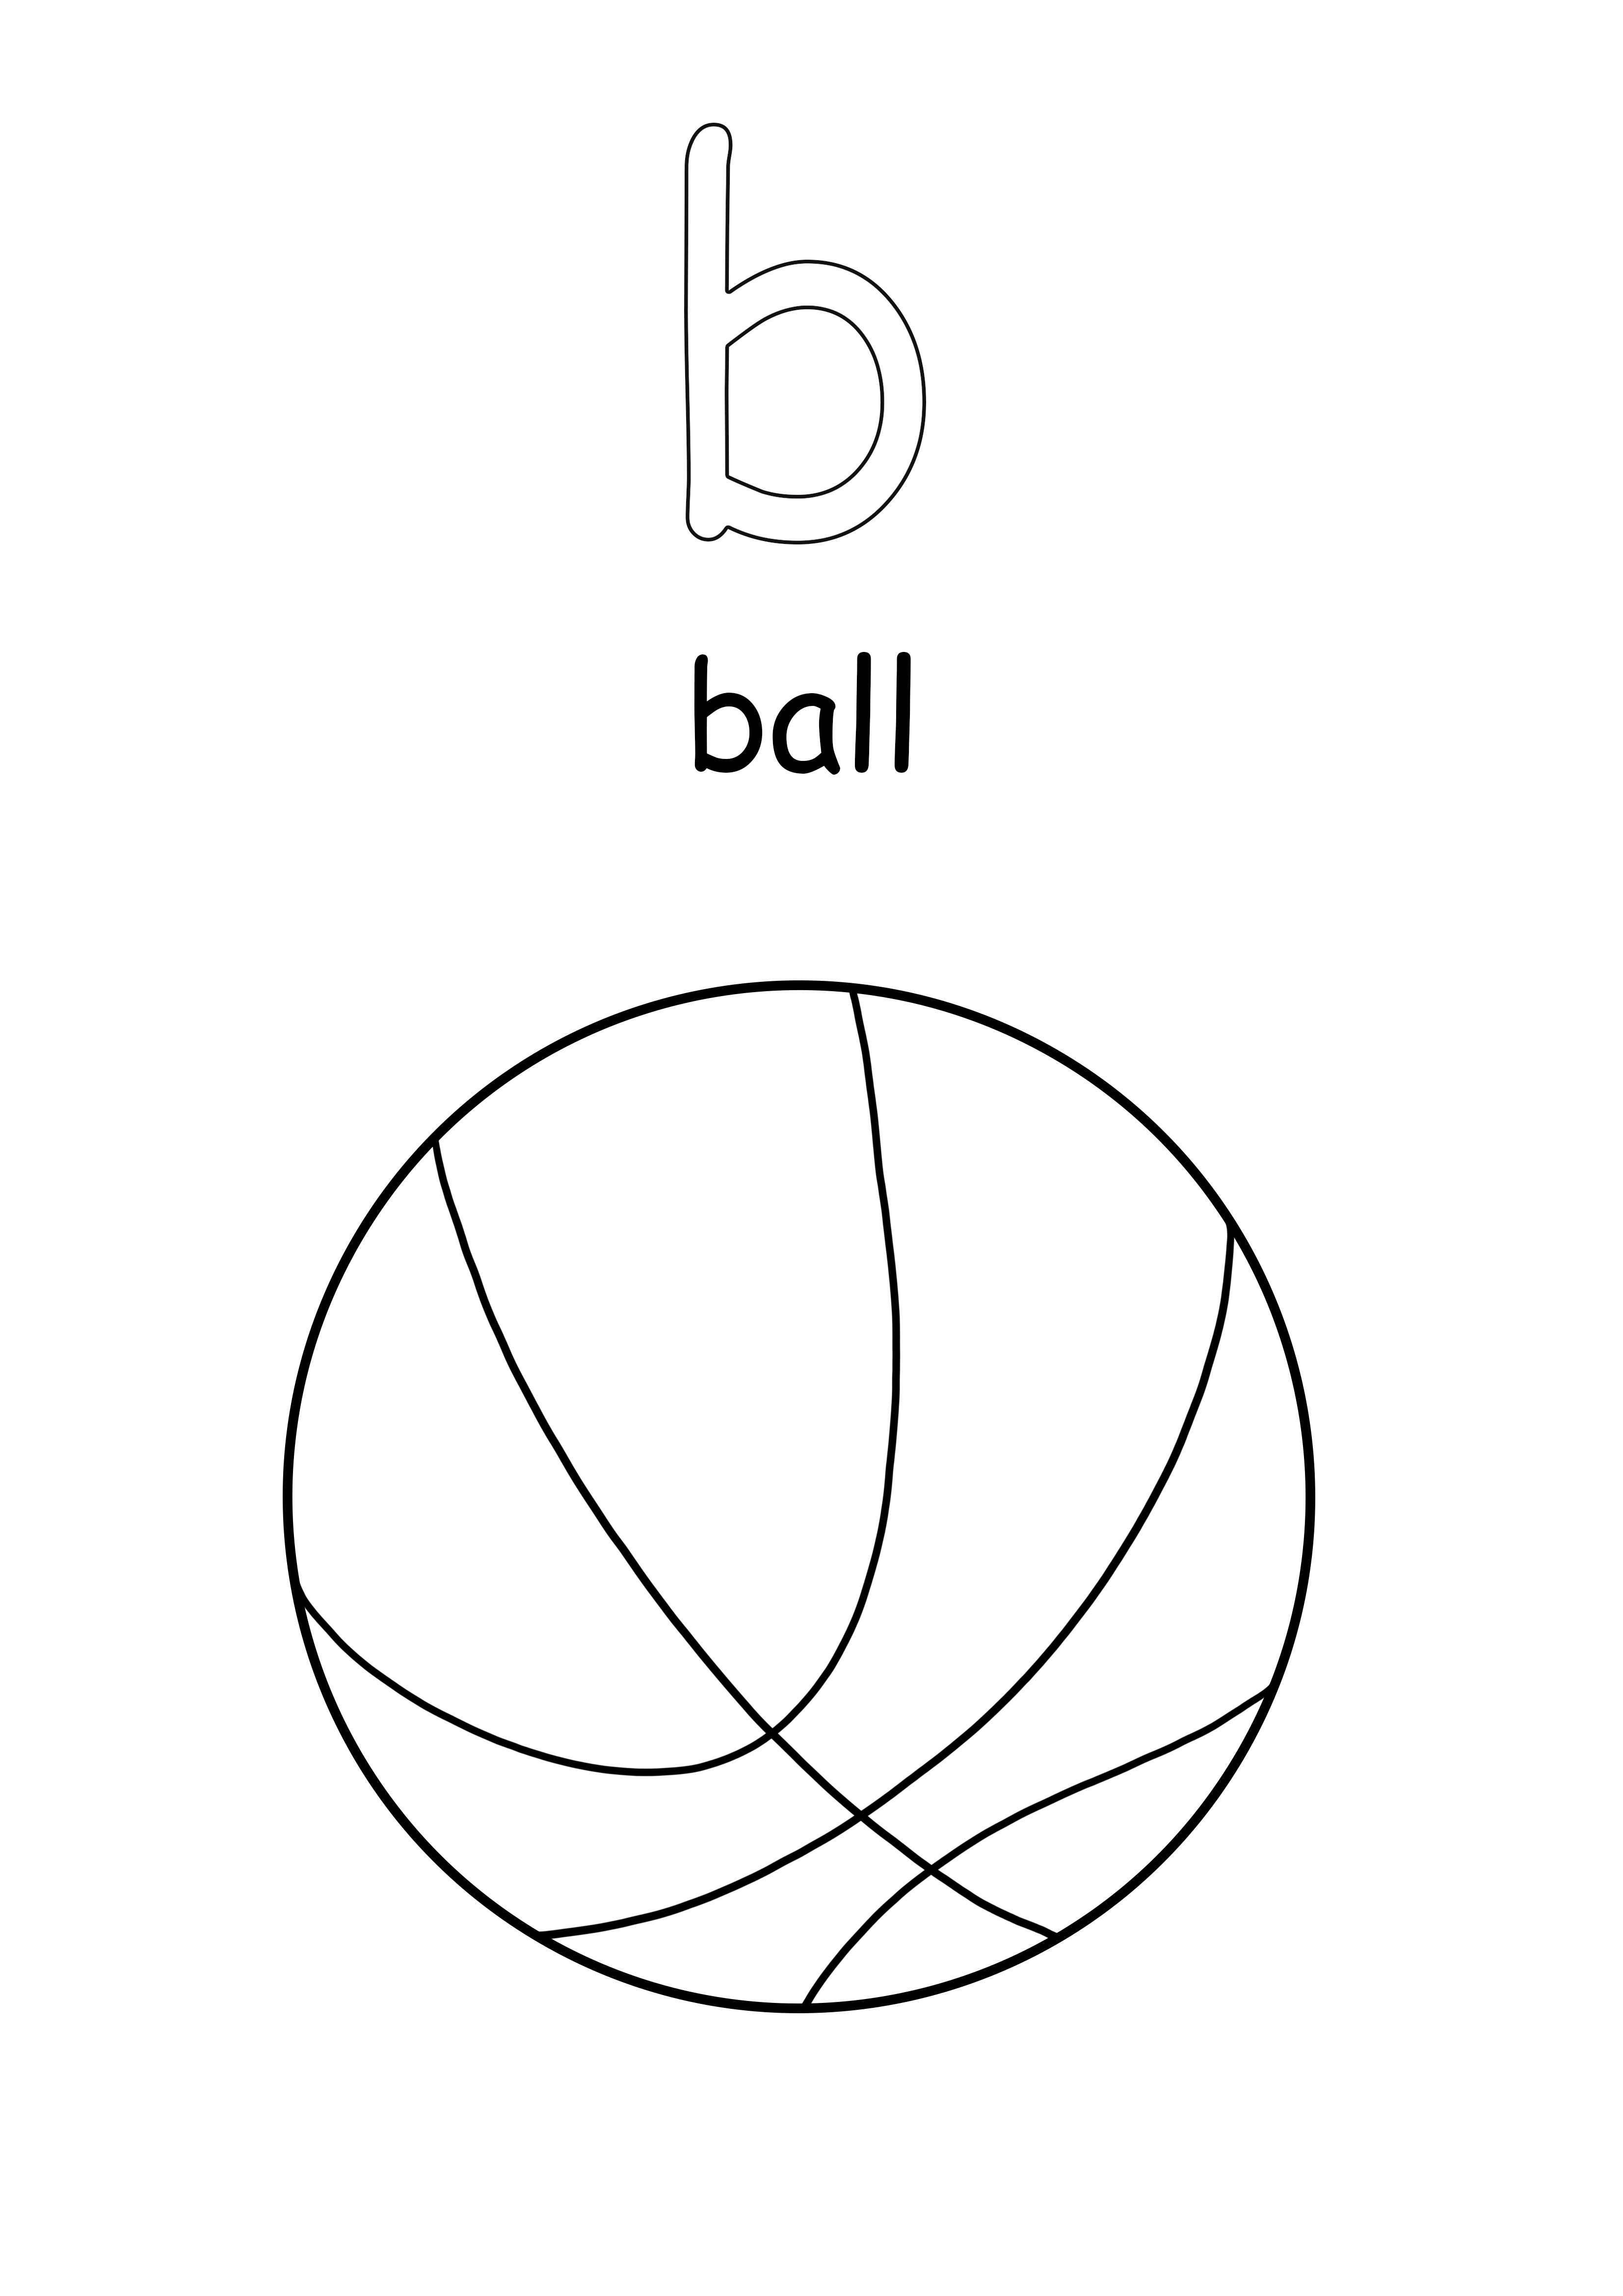 Der Kleinbuchstabe b stammt aus dem kostenlos herunterladbaren Blatt Ball Word